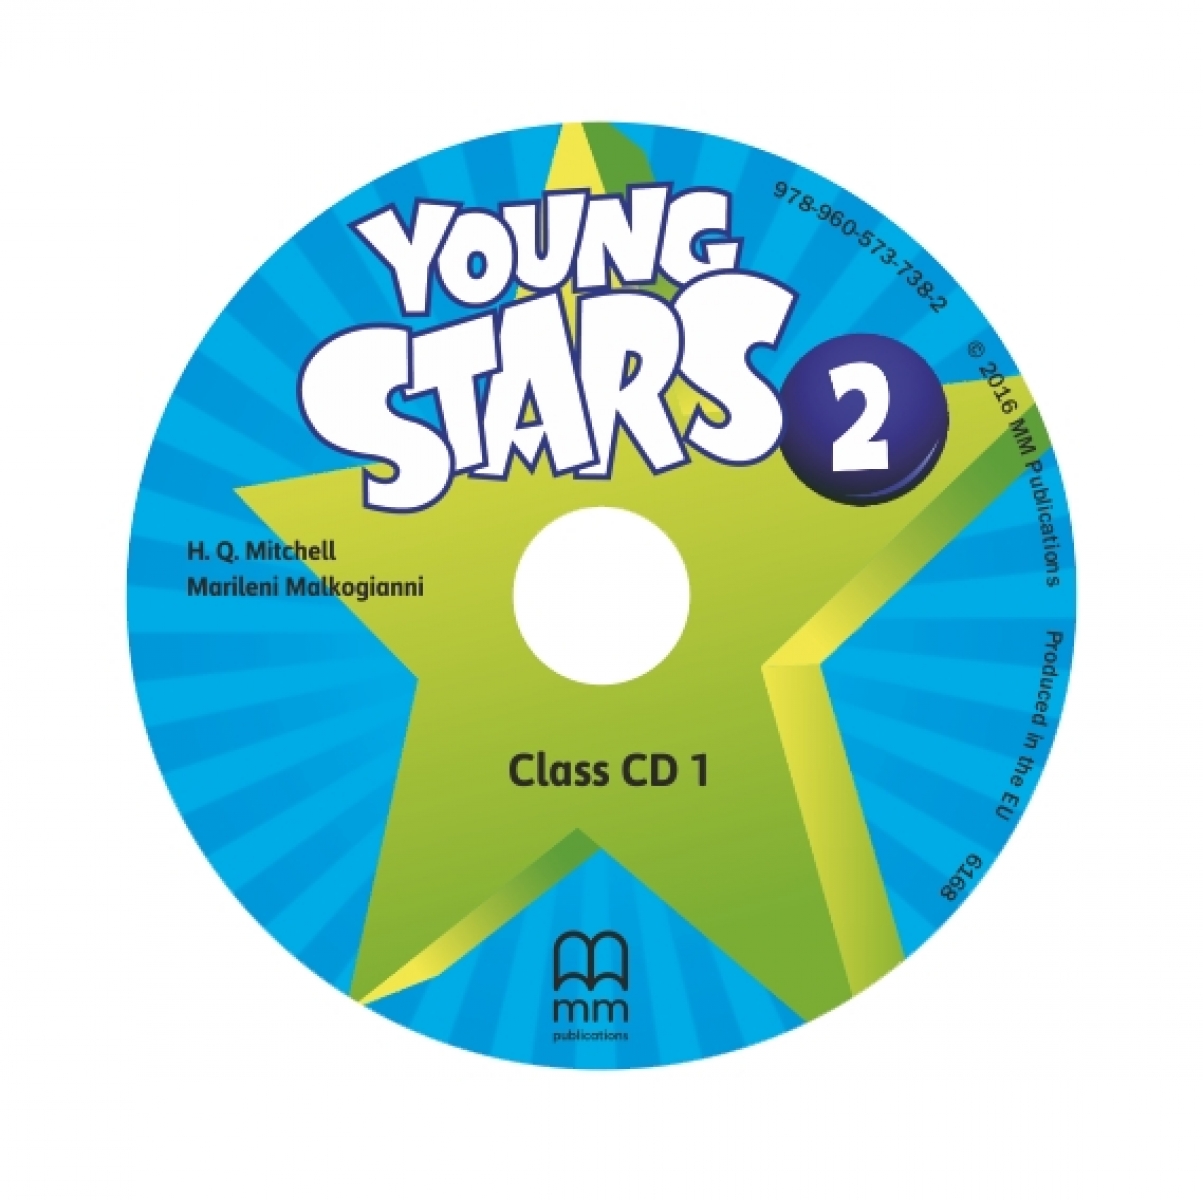 Mitchell H. Q. Young Stars 2 Class CD 